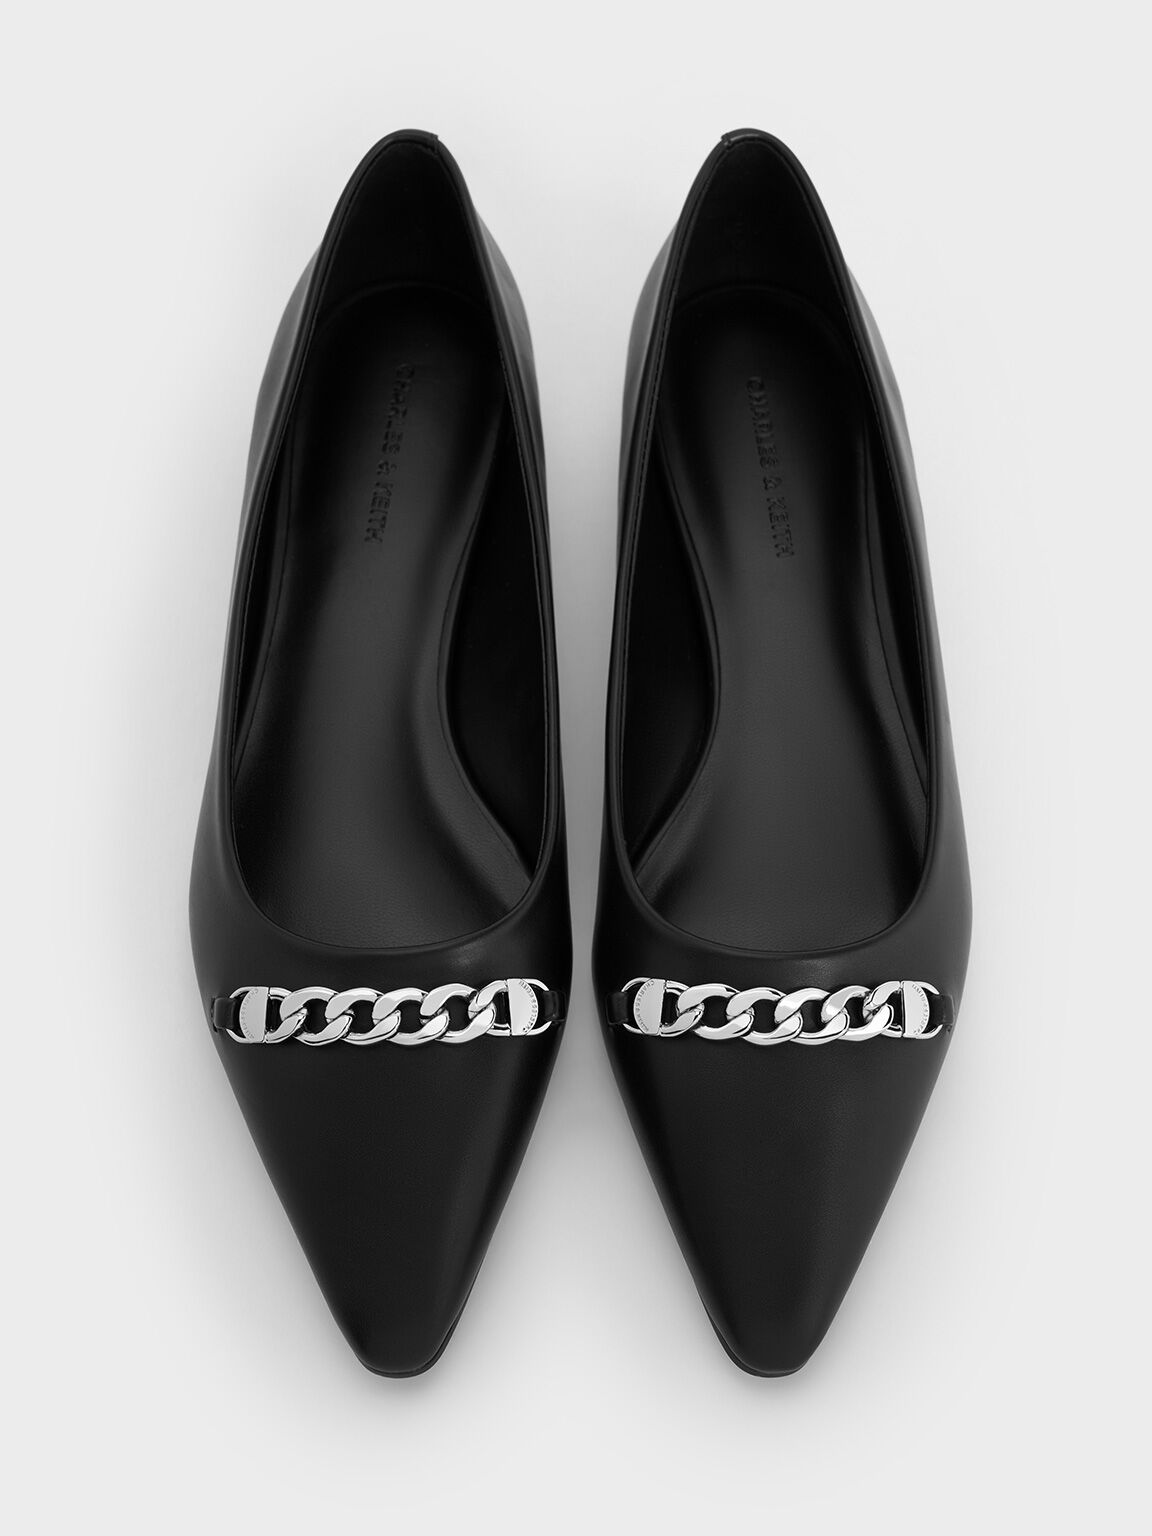 รองเท้าส้นเตี้ยบัลเลริน่าดีไซน์หัวรองเท้าแบบแหลมตกแต่งสายโซ่, สีดำ, hi-res